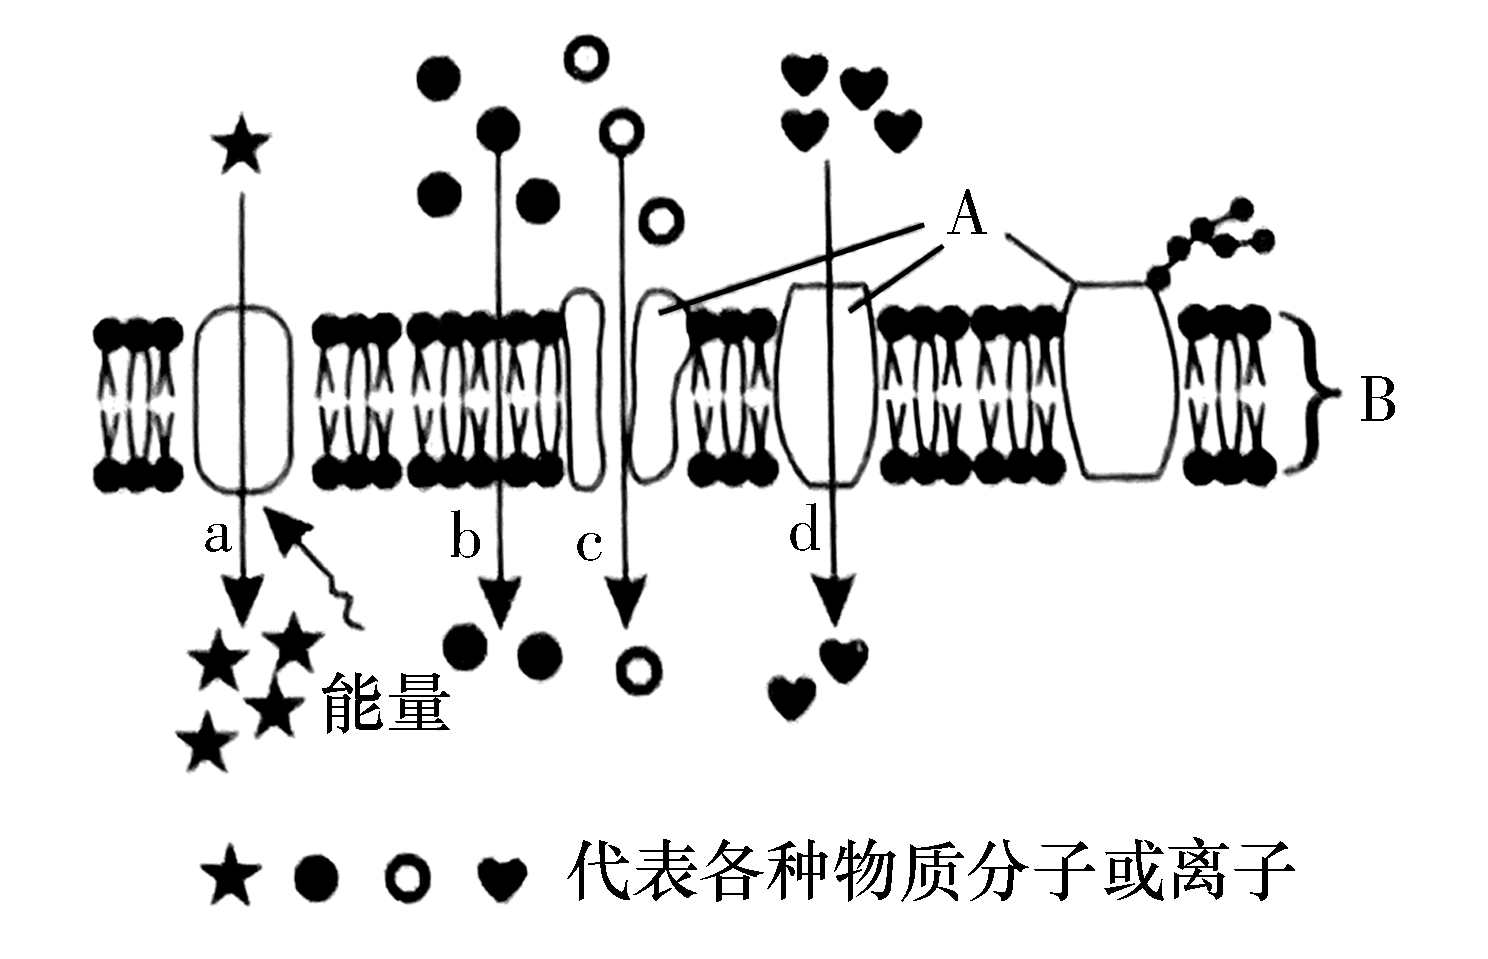 下图为物质进出细胞方式的模式图ab表示细胞膜的组成成分abcd表示物质